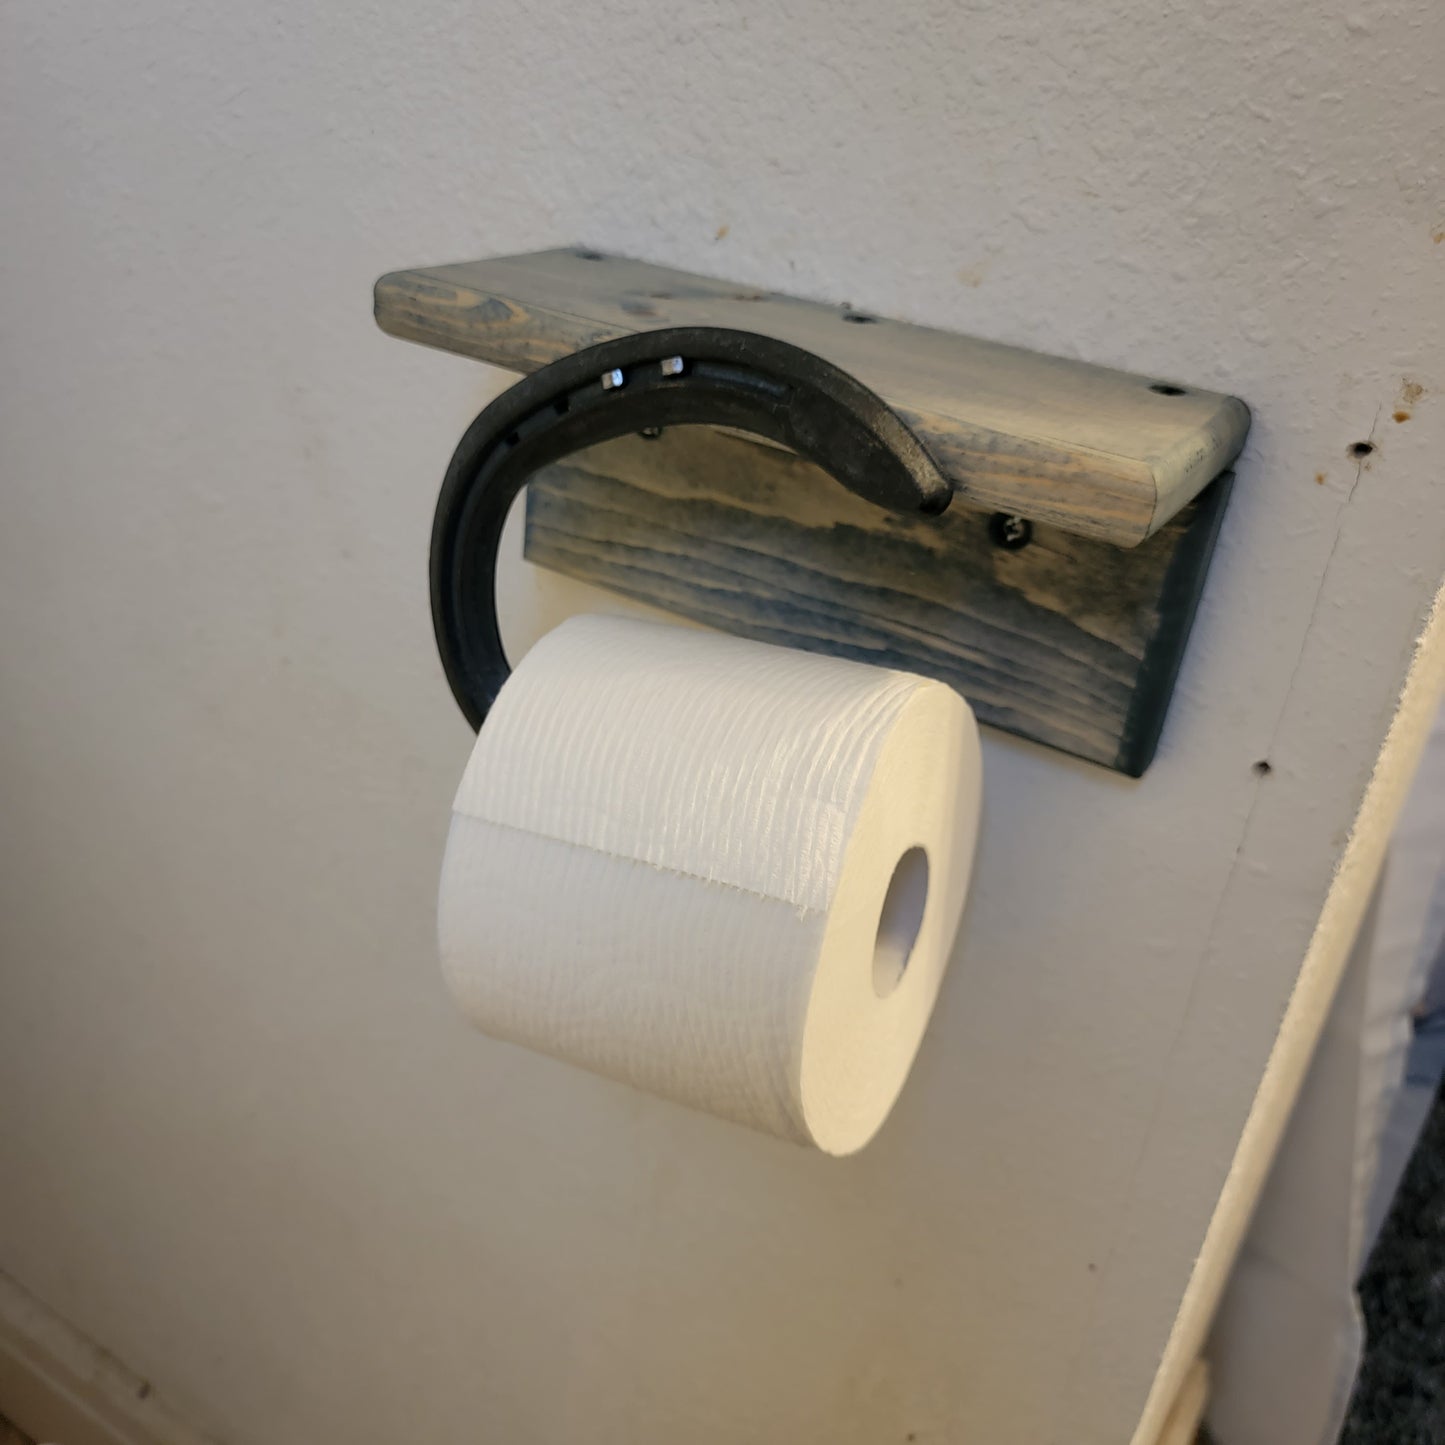 TPR - Toilet Paper Rig